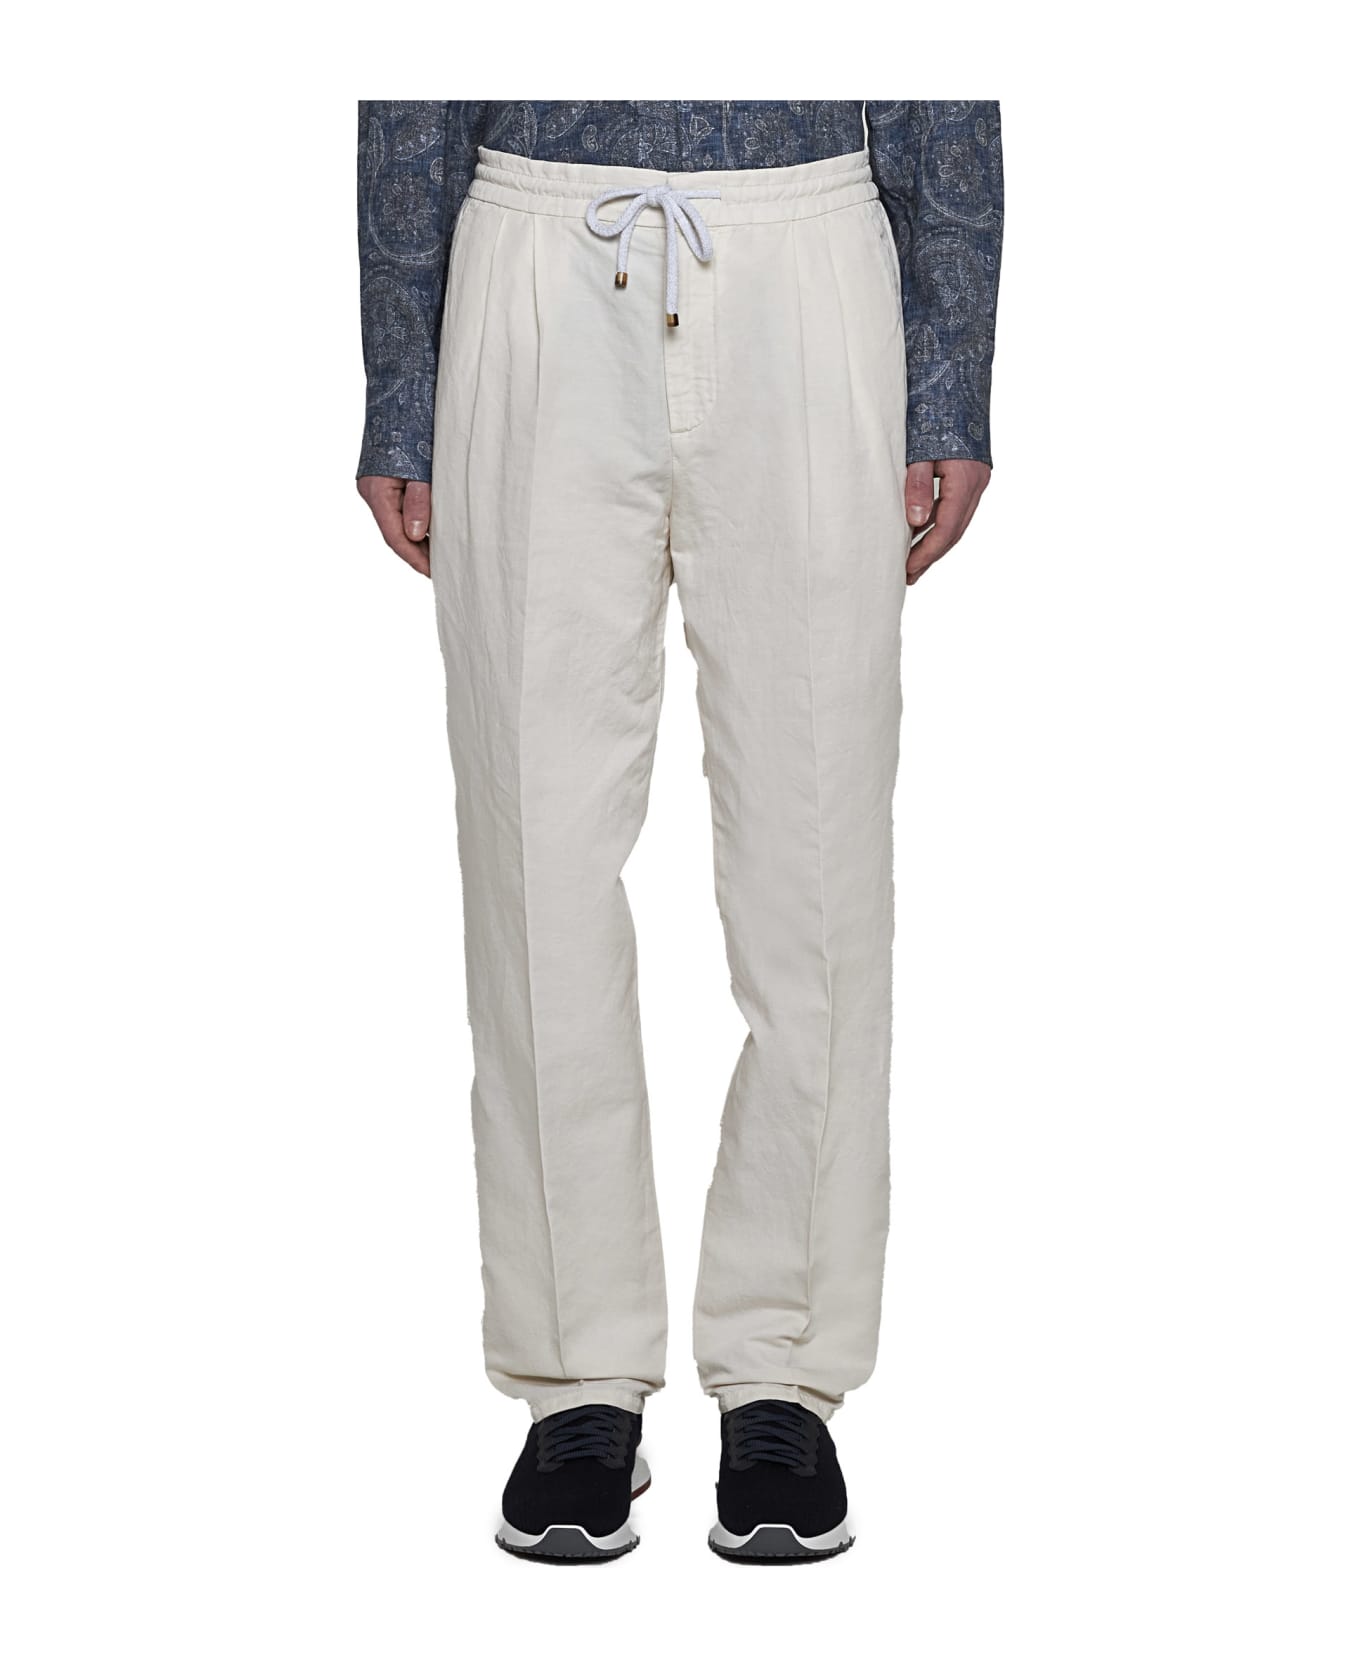 Brunello Cucinelli Pleated Trousers - White